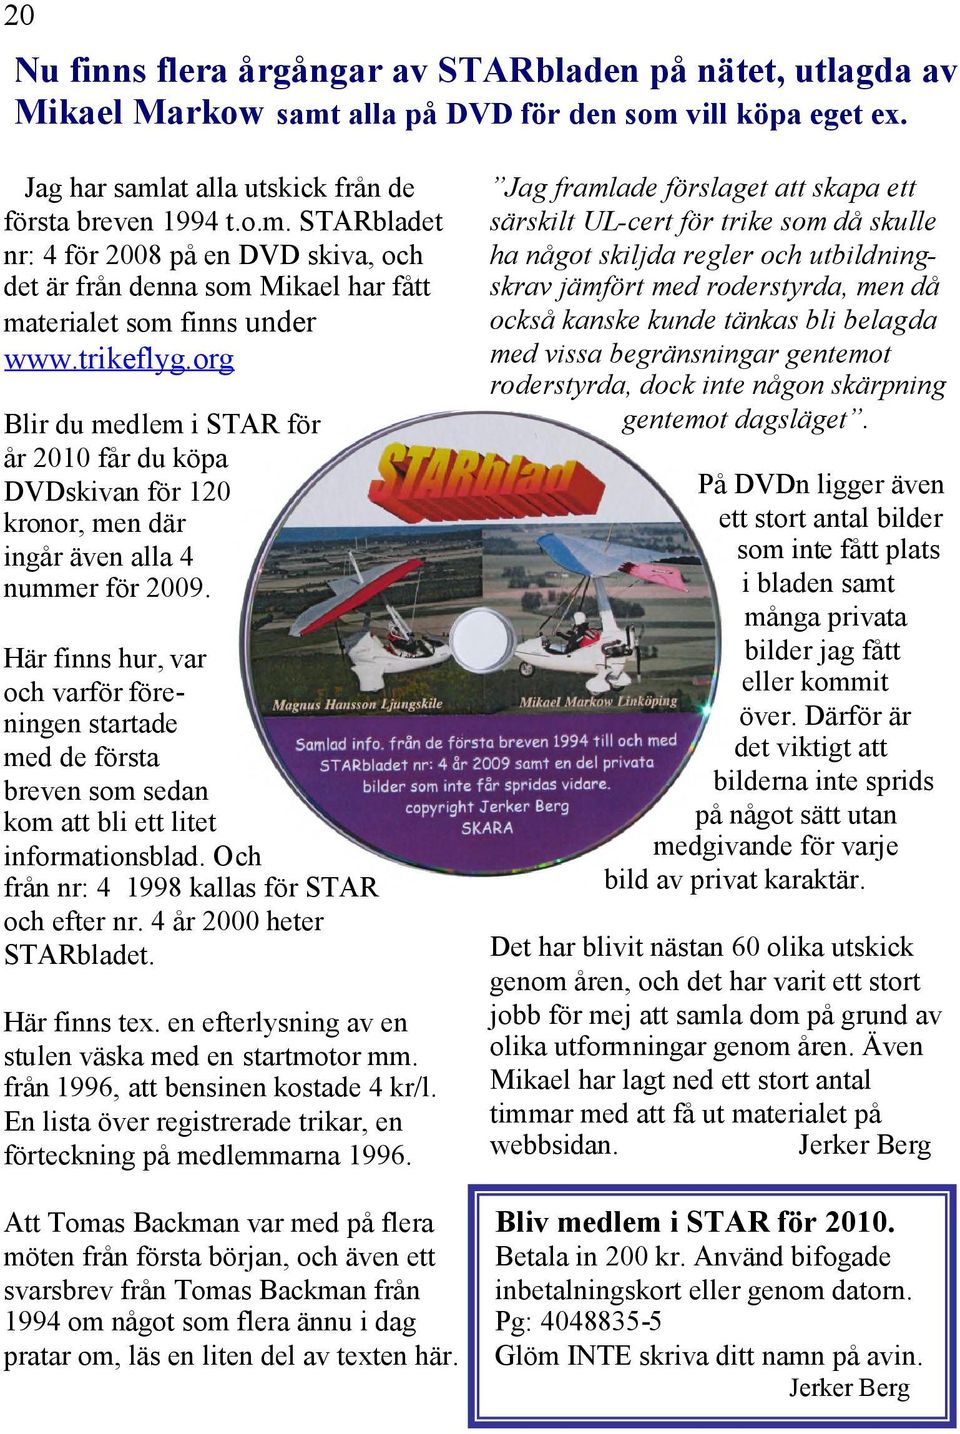 Här finns hur, var och varför föreningen startade med de första breven som sedan kom att bli ett litet informationsblad. Och från nr: 4 1998 kallas för STAR och efter nr. 4 år 2000 heter STARbladet.